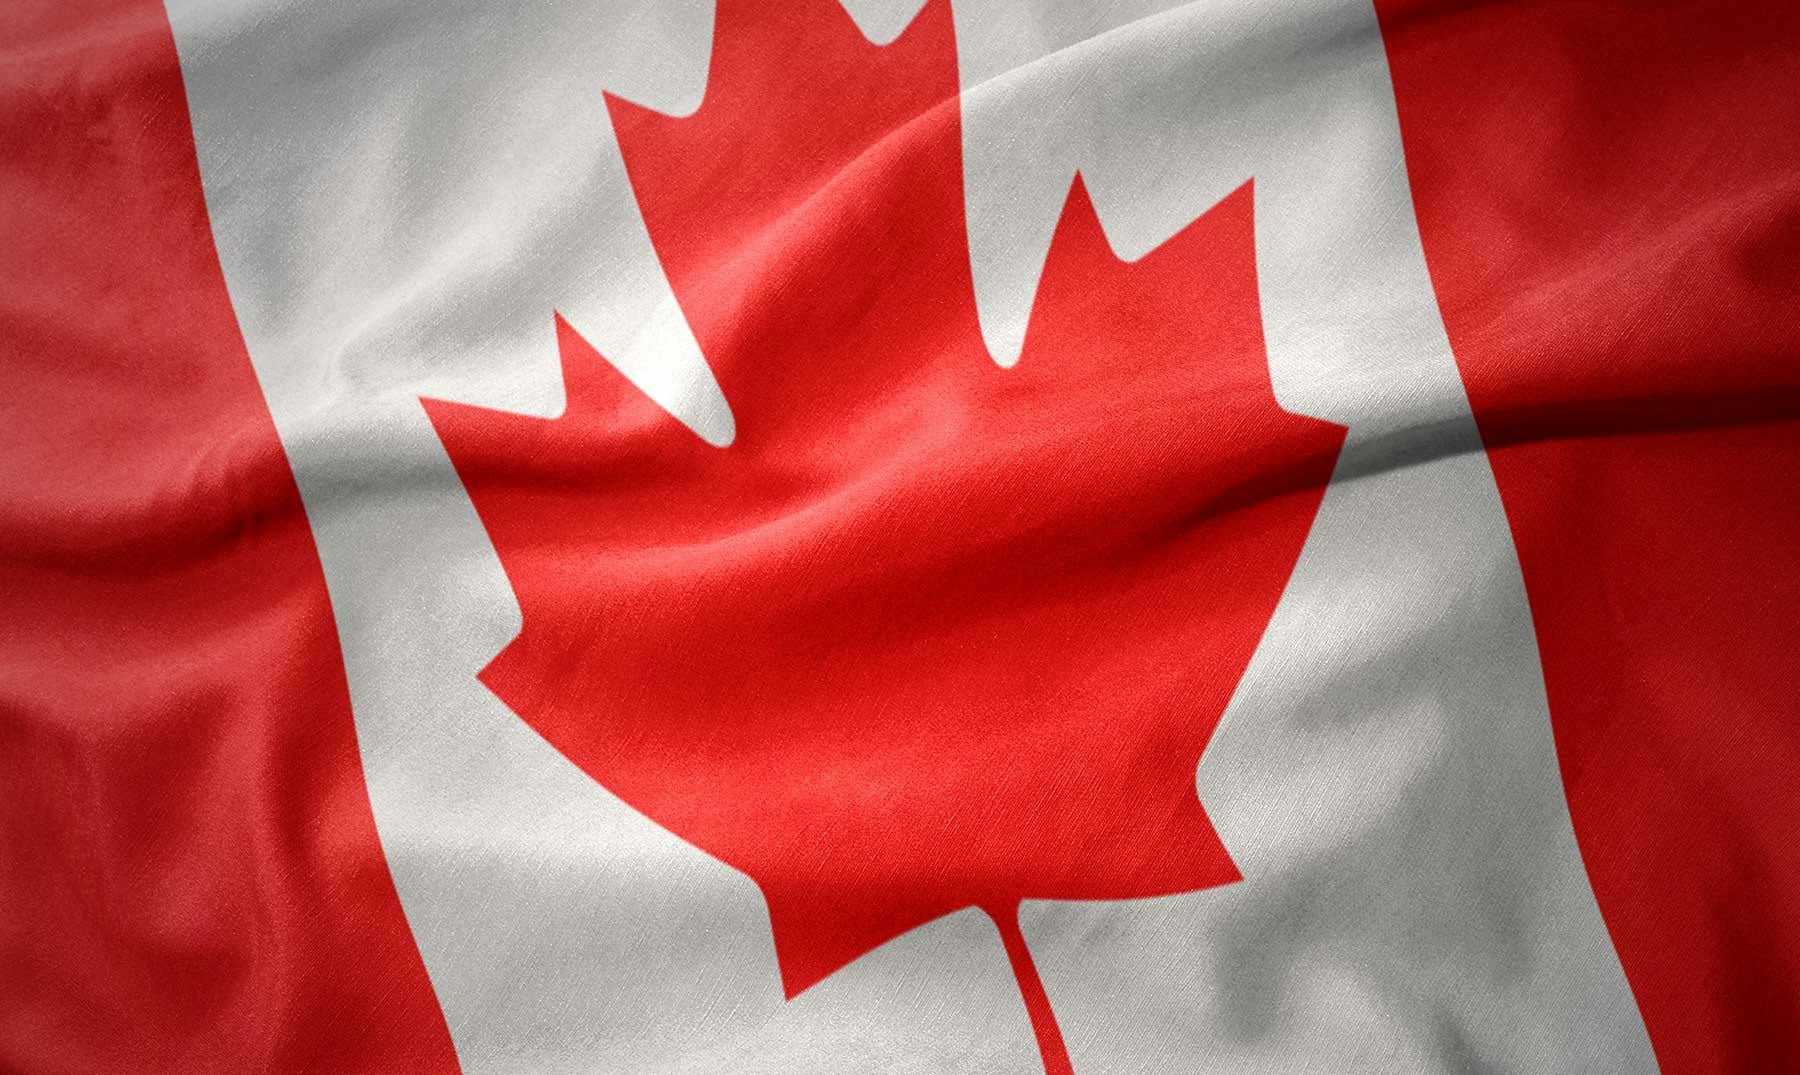 Todo sobre la bandera de Canadá | Significado e historia